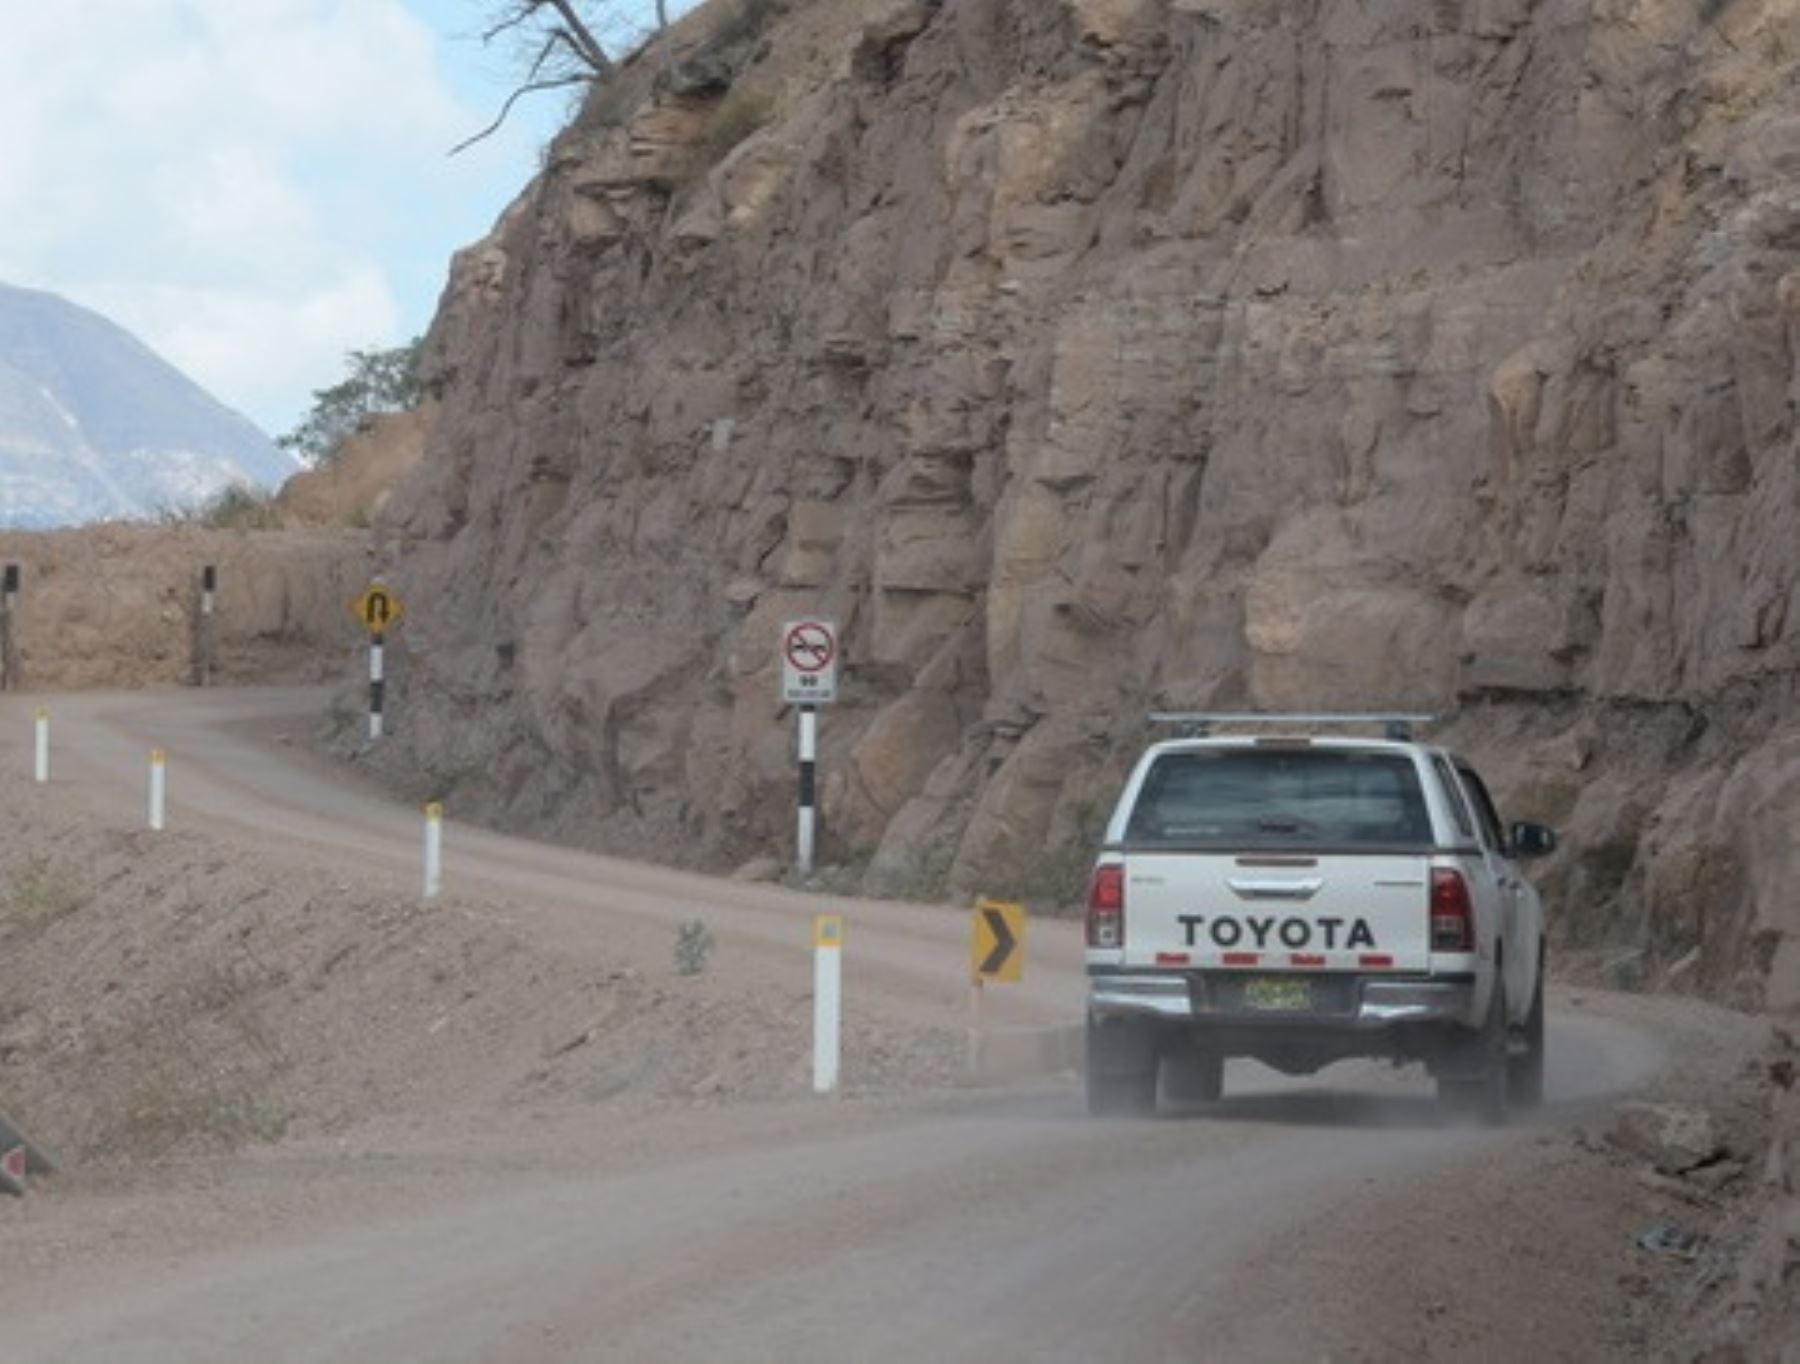 En diciembre culminarán los trabajos en la carretera Calemar-Abra El Naranjillo, que unirá a la provincia de Bolívar con Trujillo, en la región La Libertad, anunció el MTC.